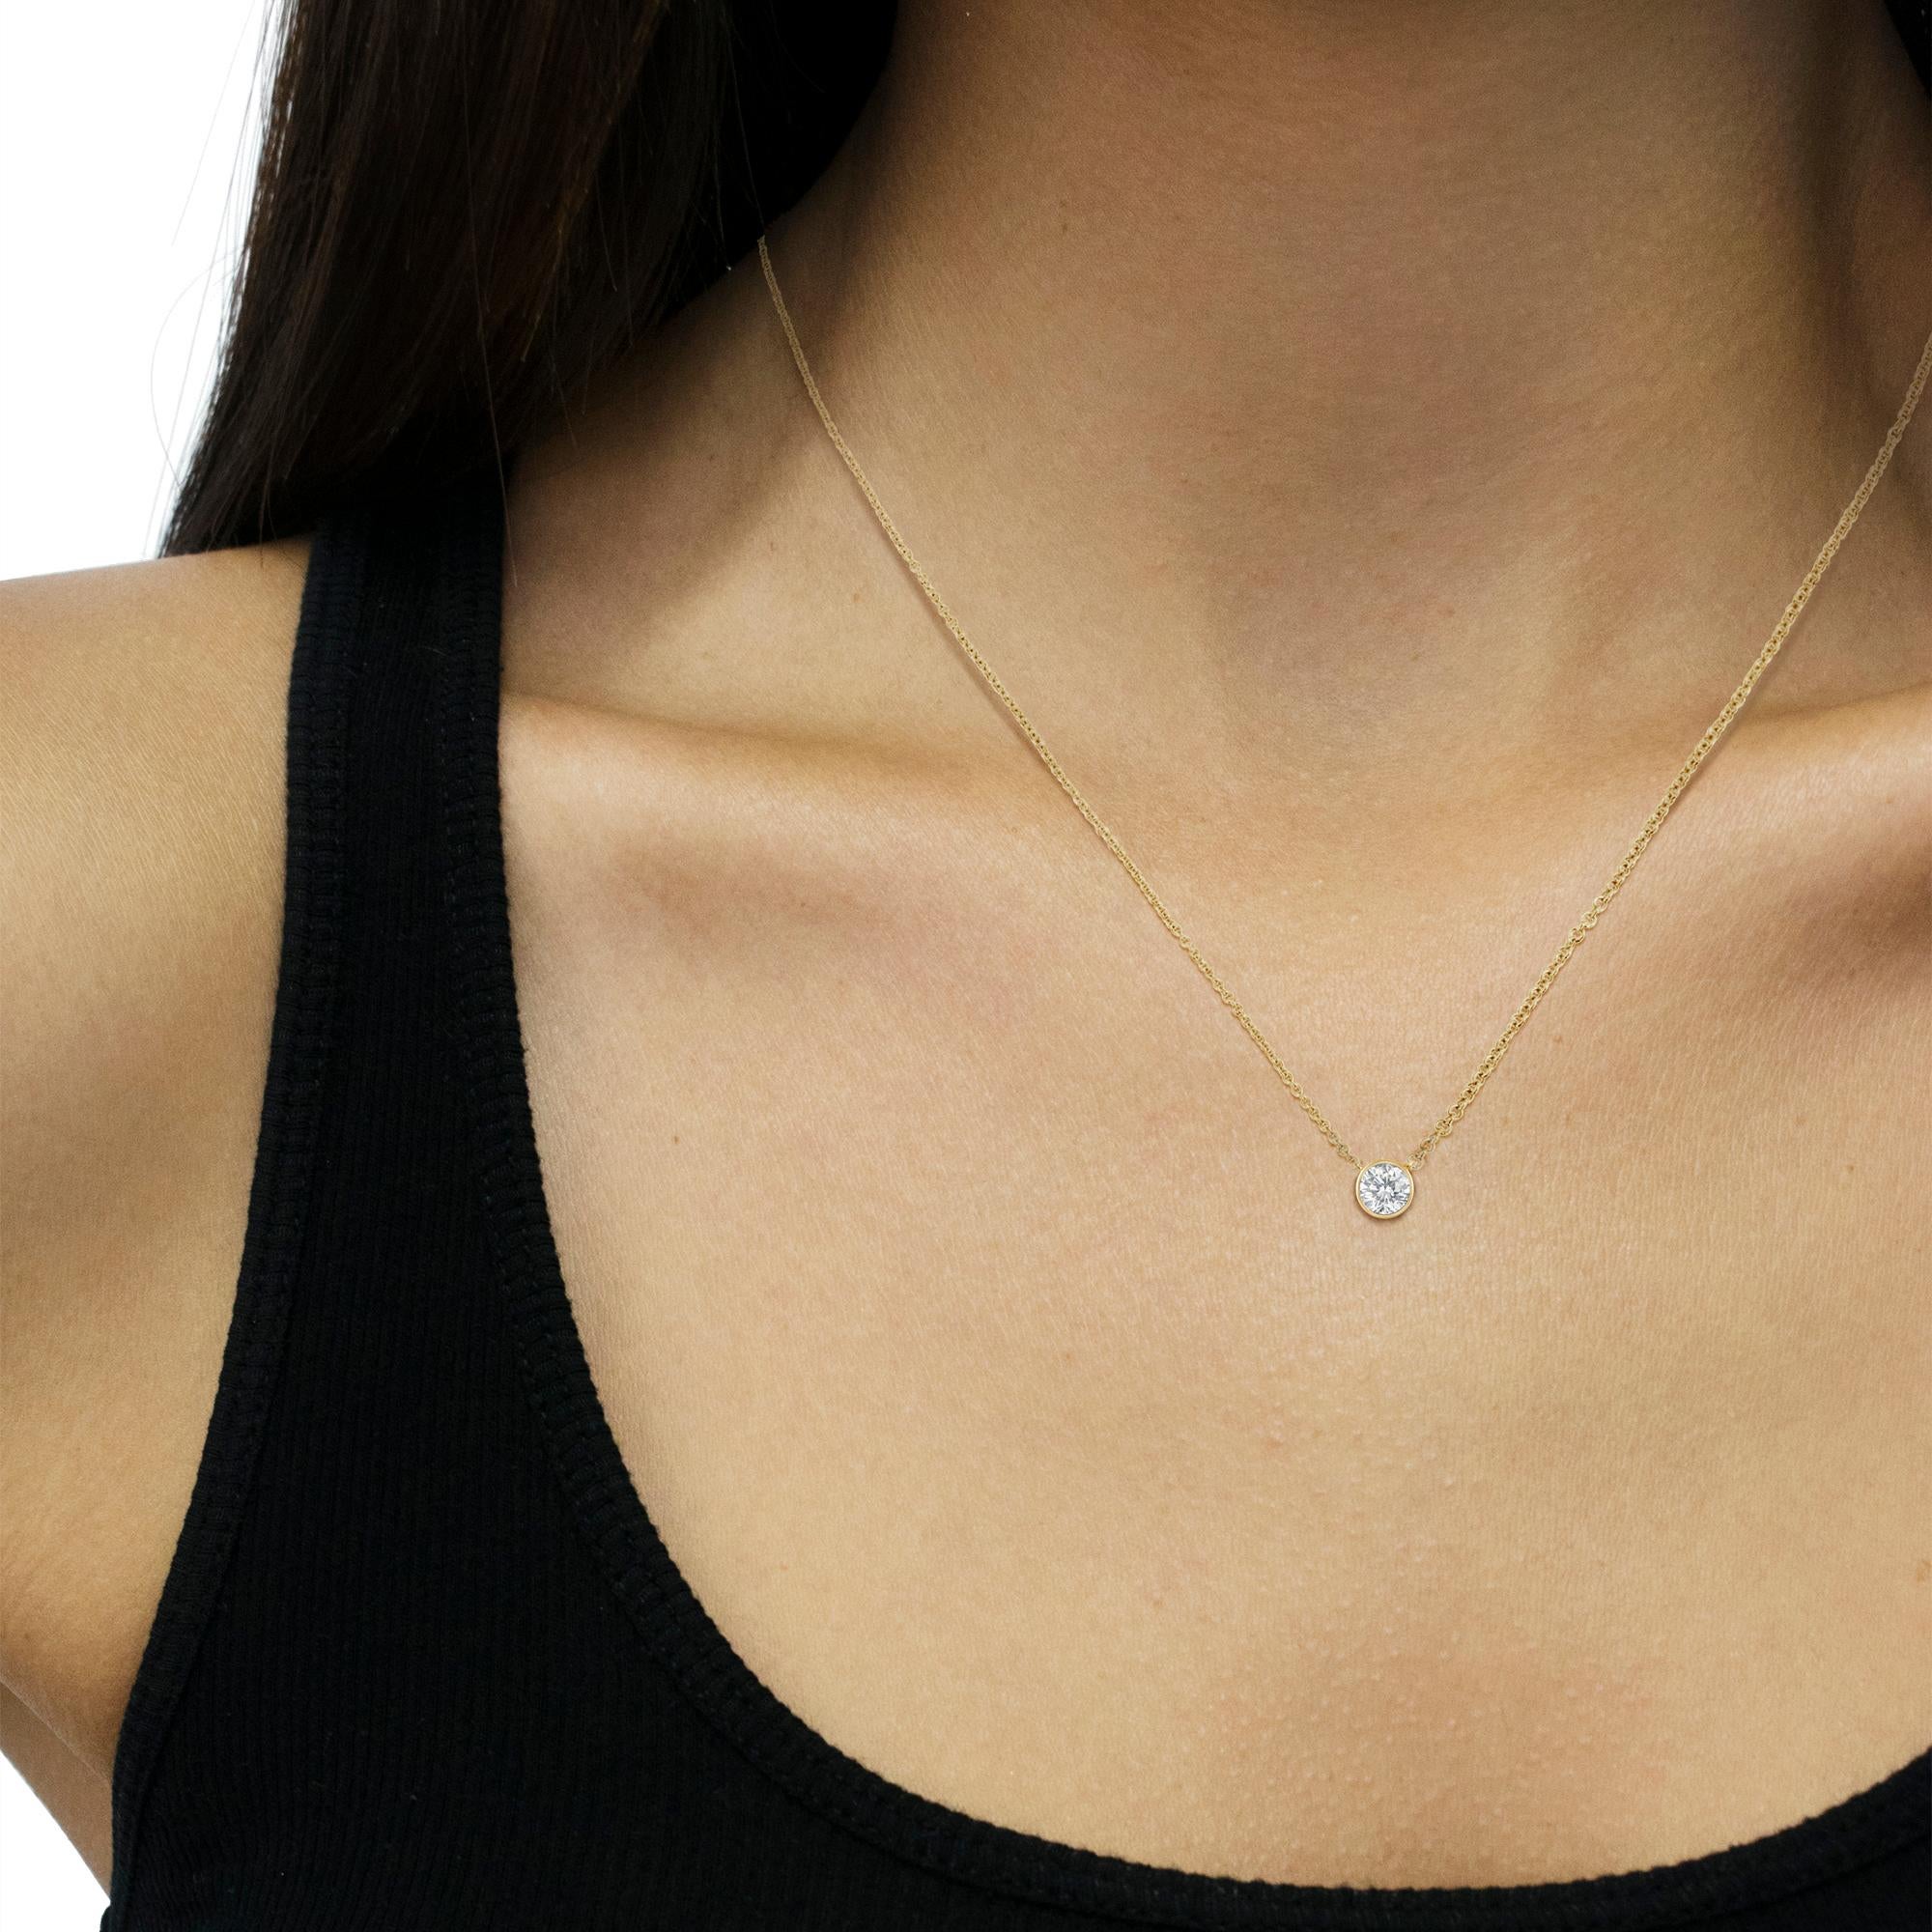 1/2 carat bezel set diamond necklace